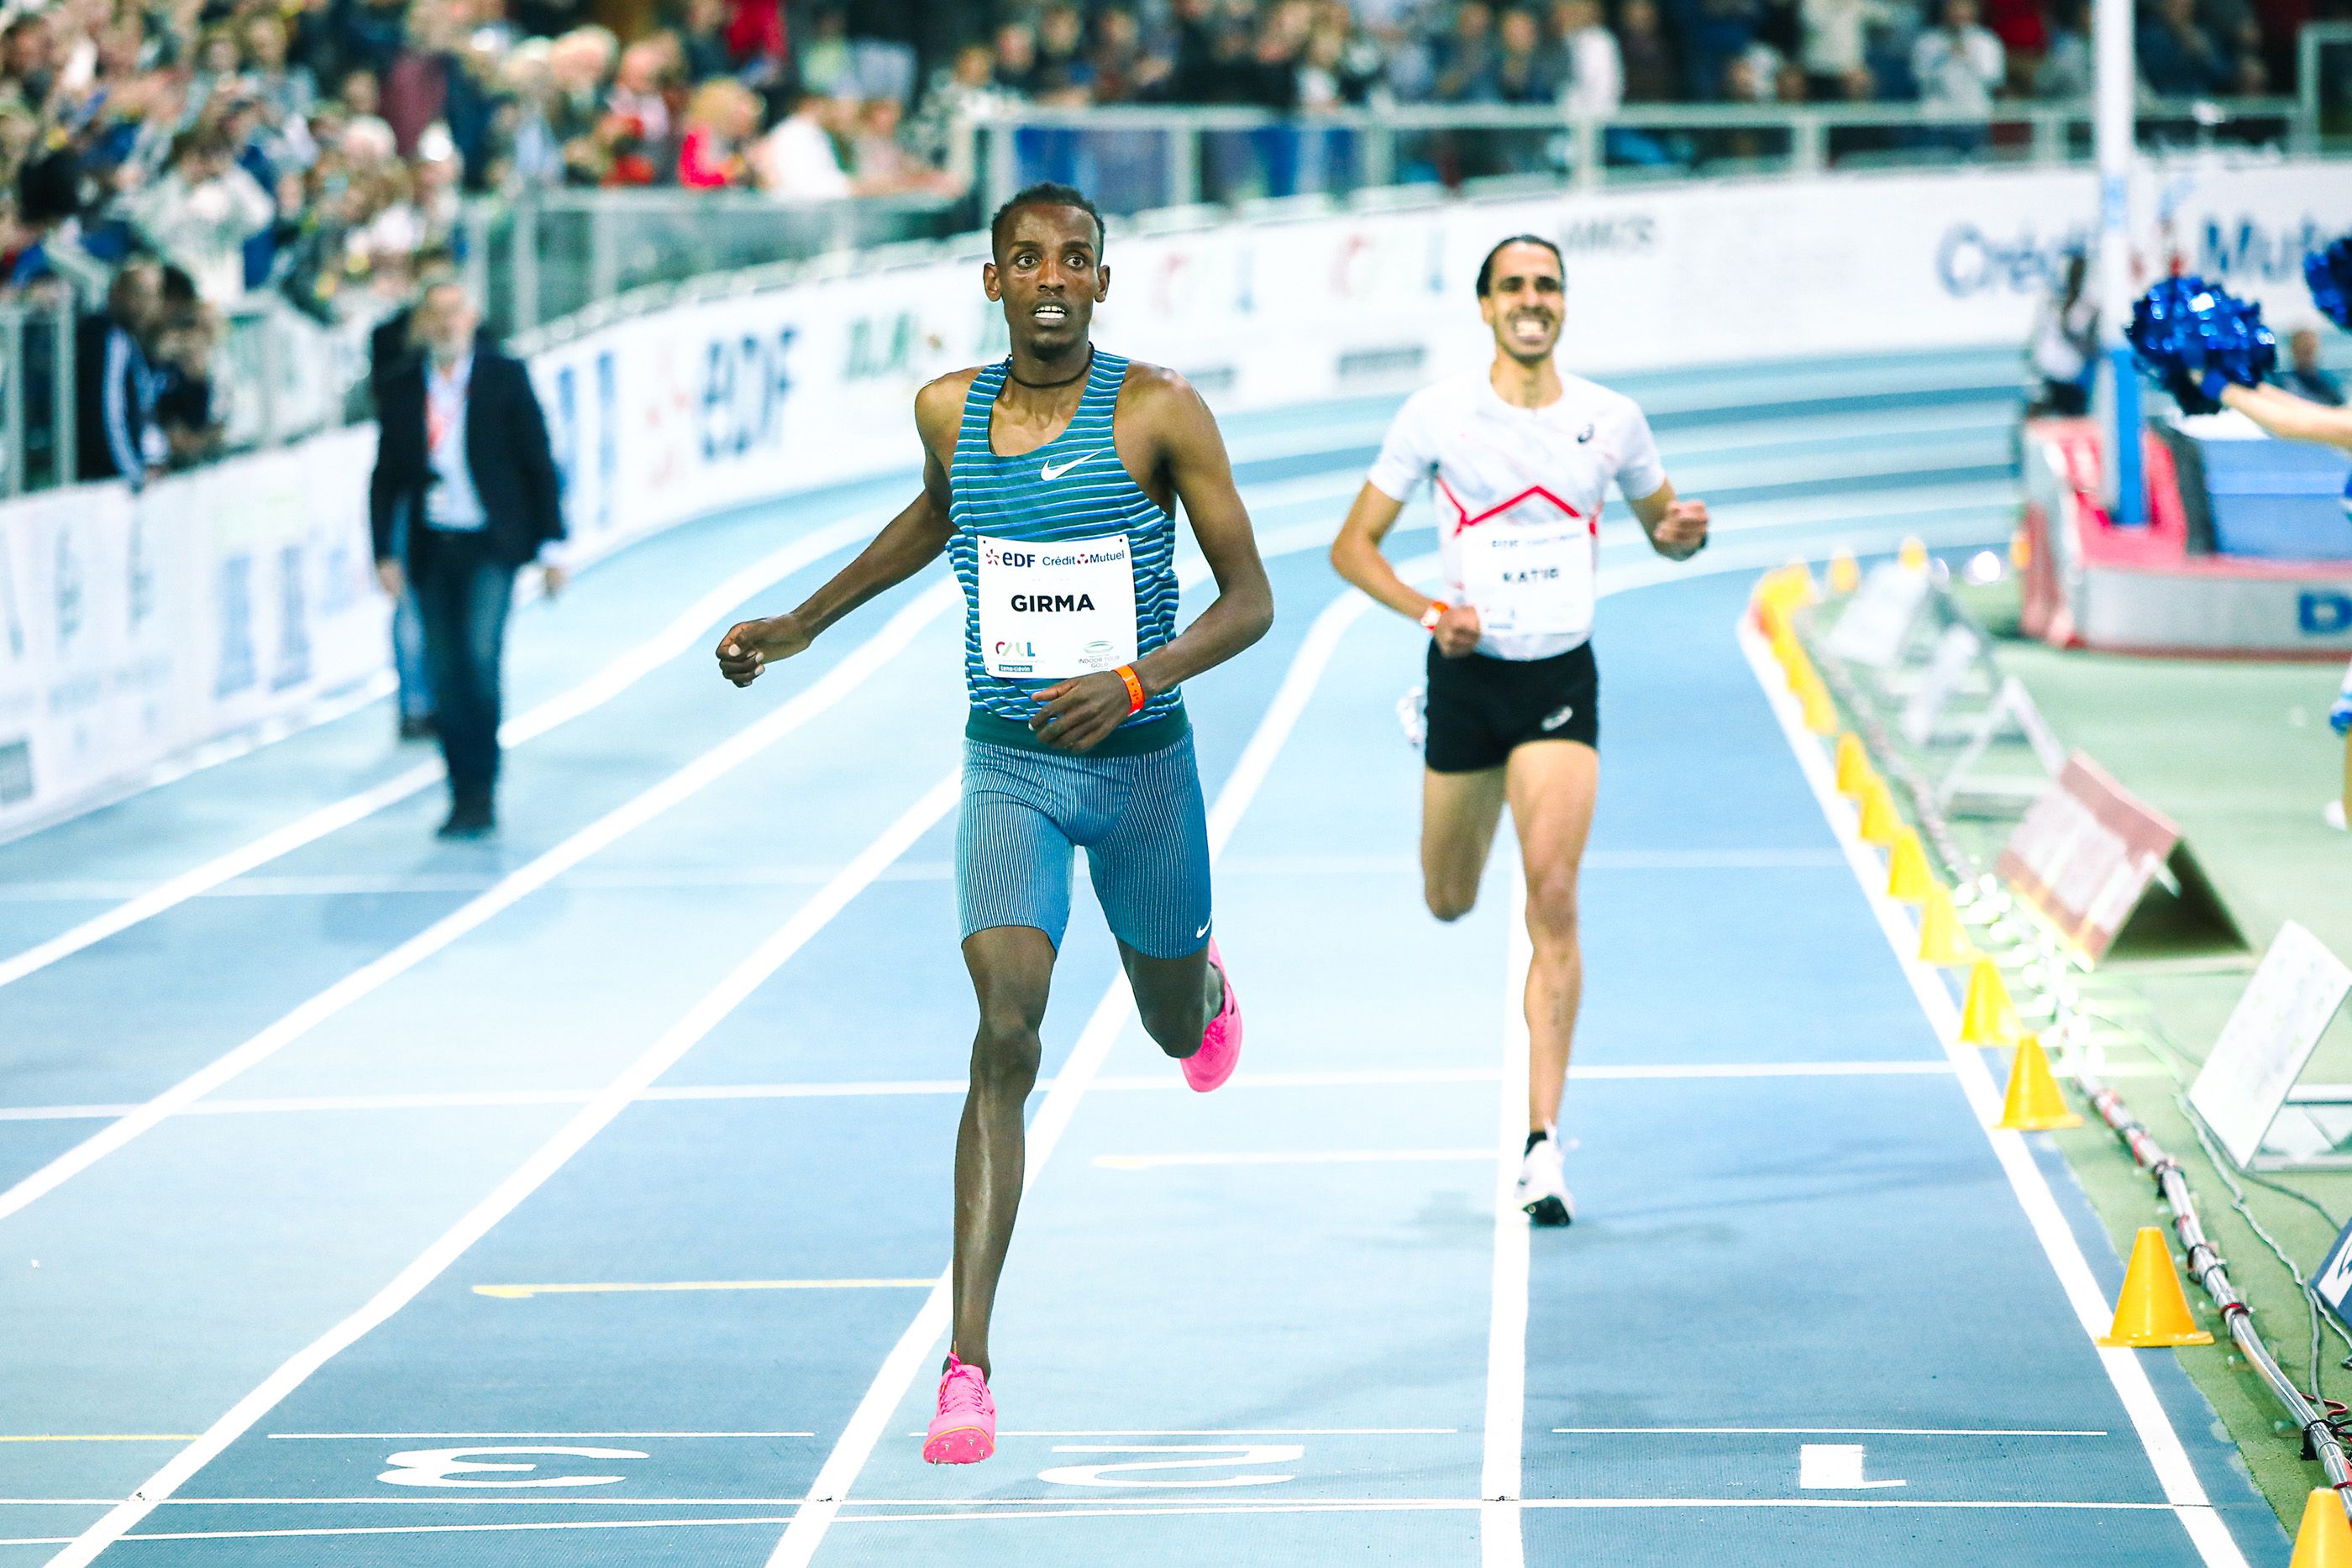 Lamecha Girma breaks the world indoor 3000m record in Lievin